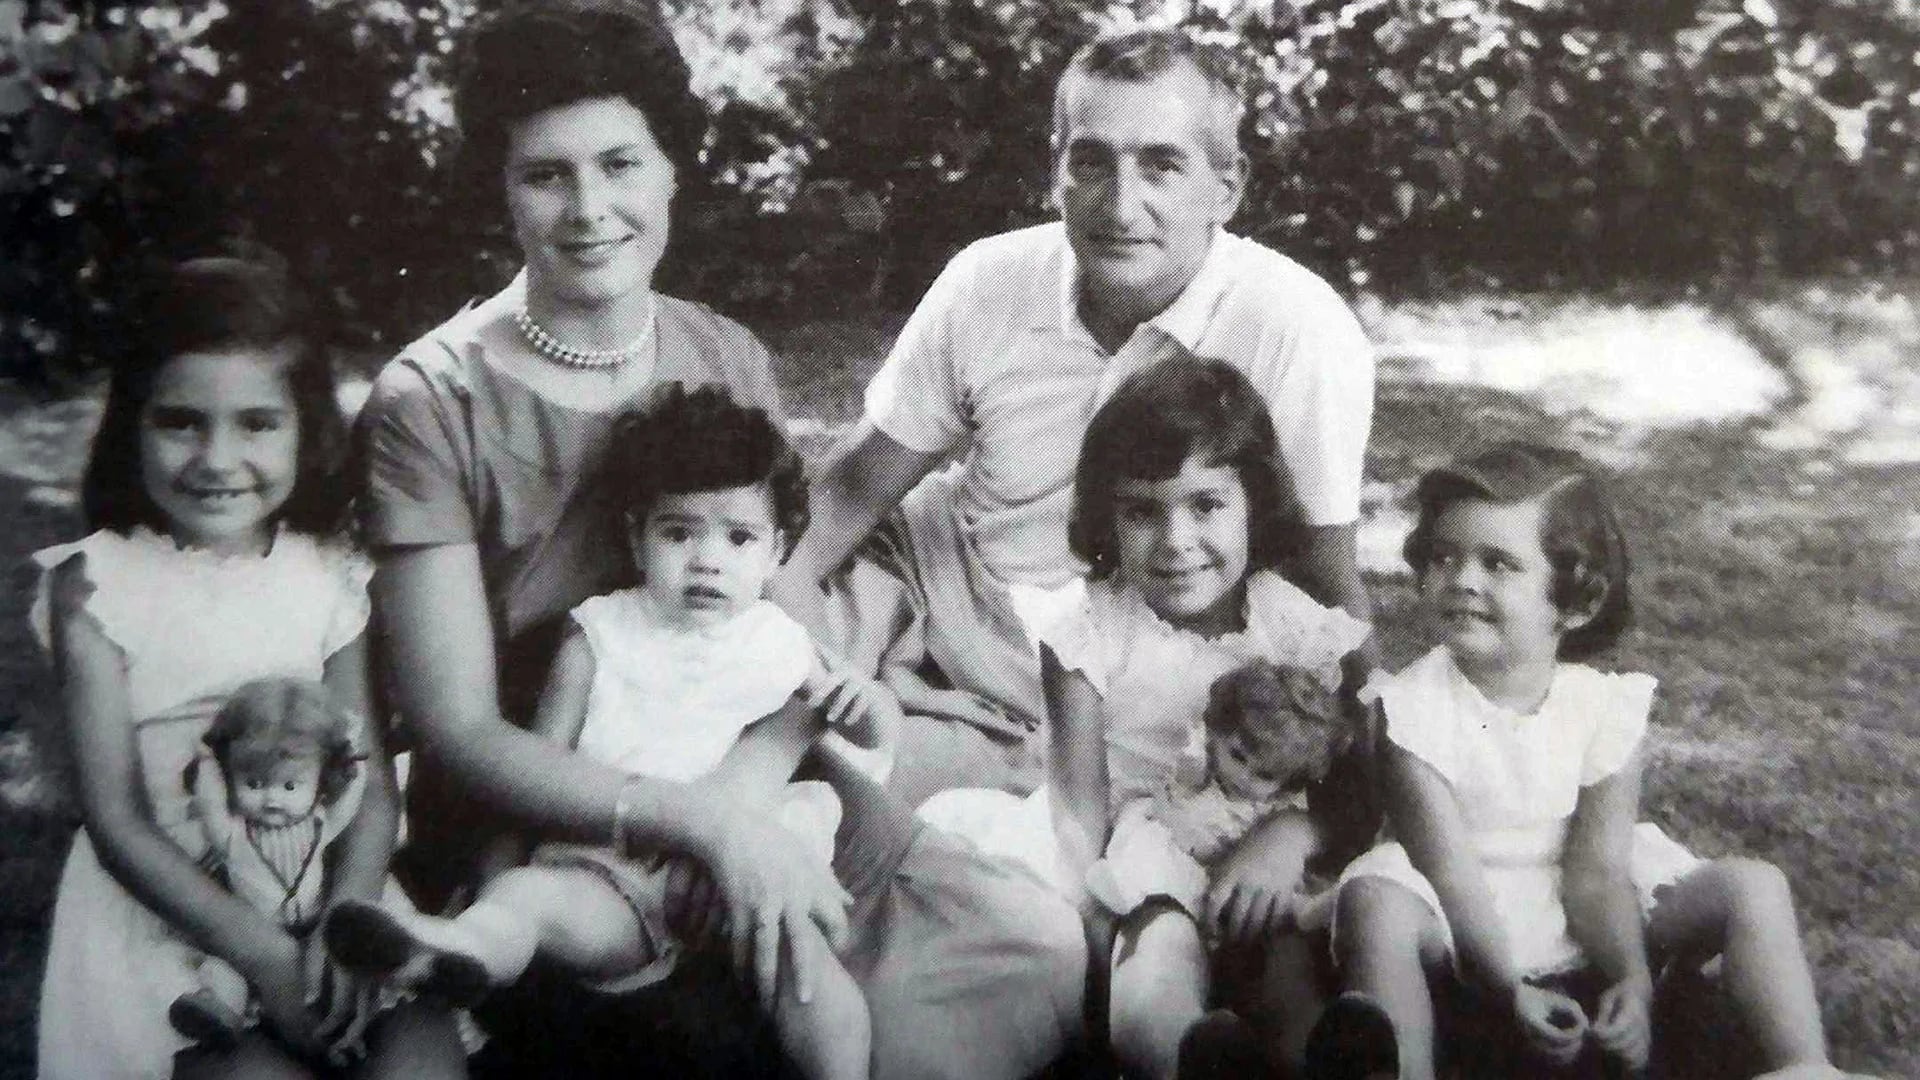 Estela, Beatriz, Marina y Diana de pequeñas junto a sus padres, Elsa y Héctor Oesterheld. Marina (18) y Diana (24) estaban embarazadas. Beatriz tenía 19 años y Beatriz, 25.